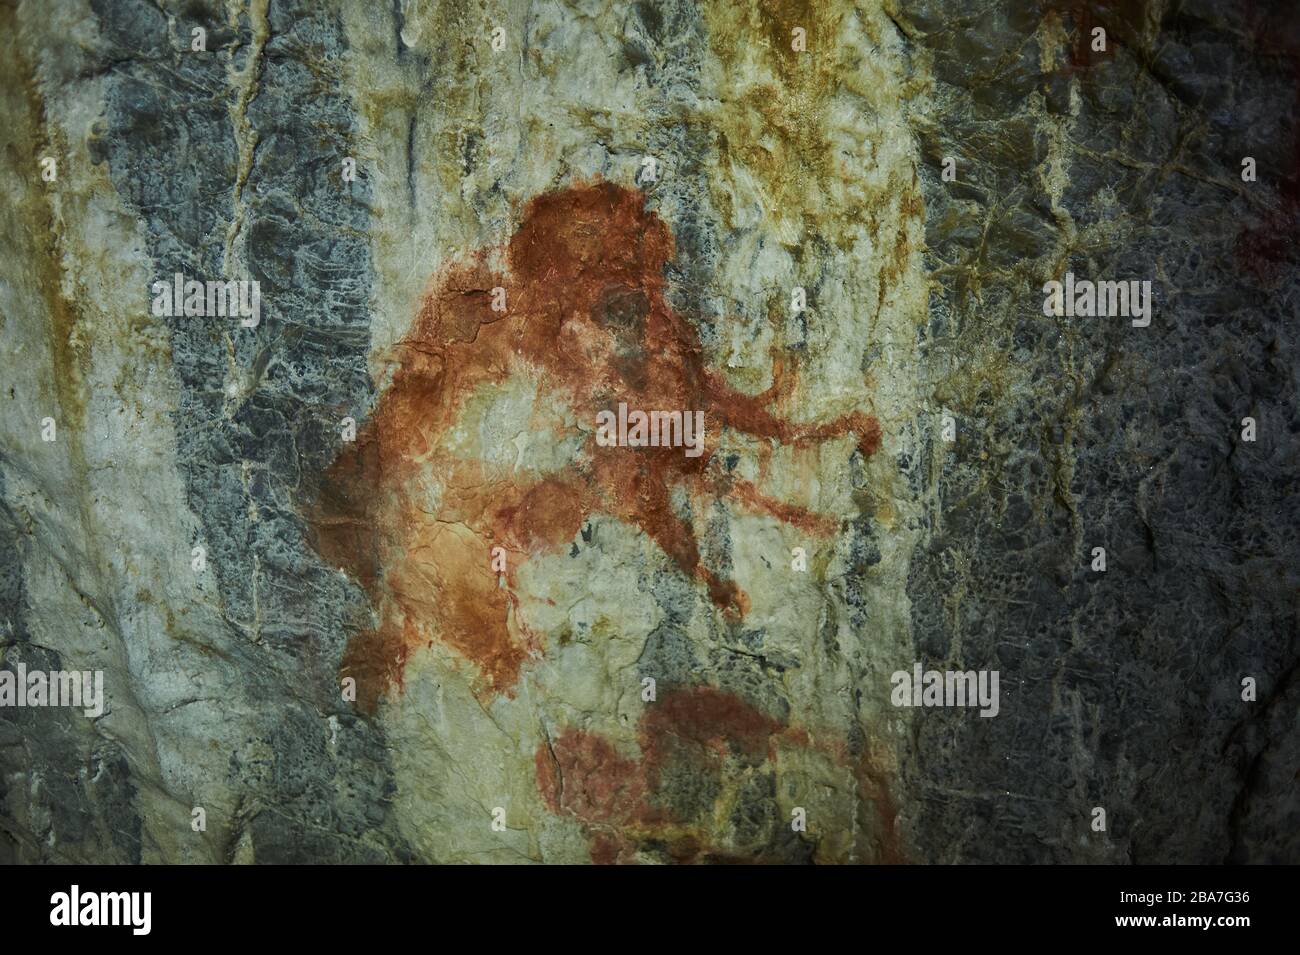 Felsmalereien in einer Steinhöhle eines uralten prähistorischen Neandertalers. Mammut. Steinzeit. Eiszeit. Shulgan Tash Cave Russland Bashkiria Stockfoto